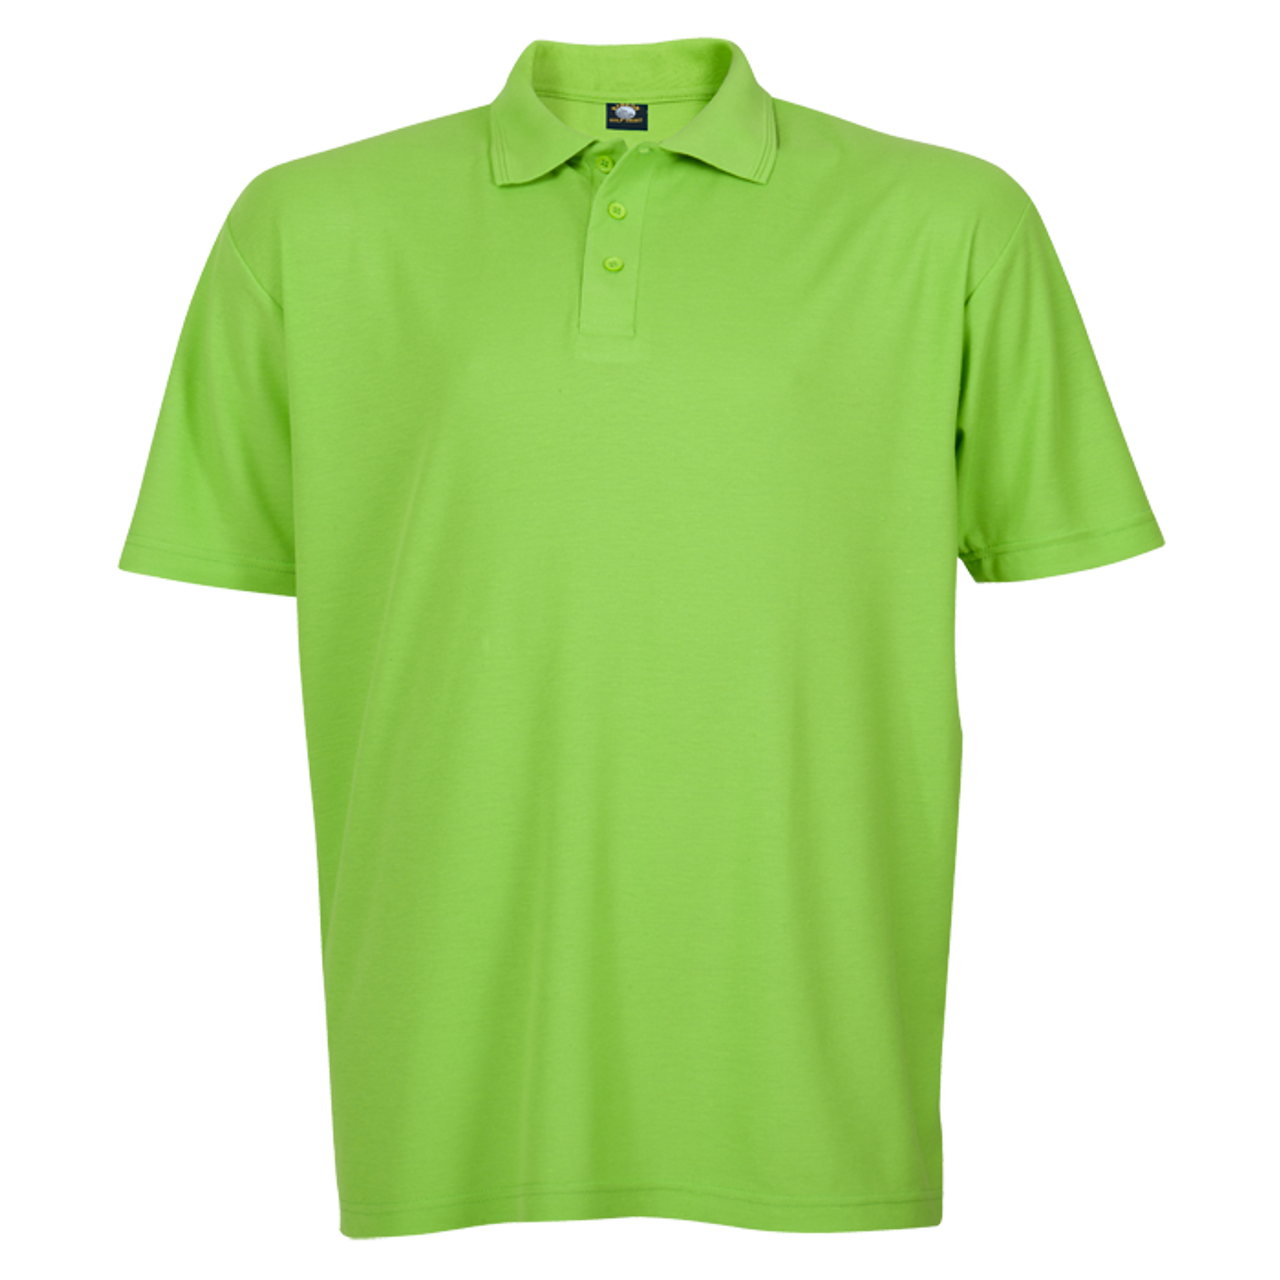 BARRON 175g Pique Knit Golf Shirt | Branding Golf Shirts | Azulwear ...